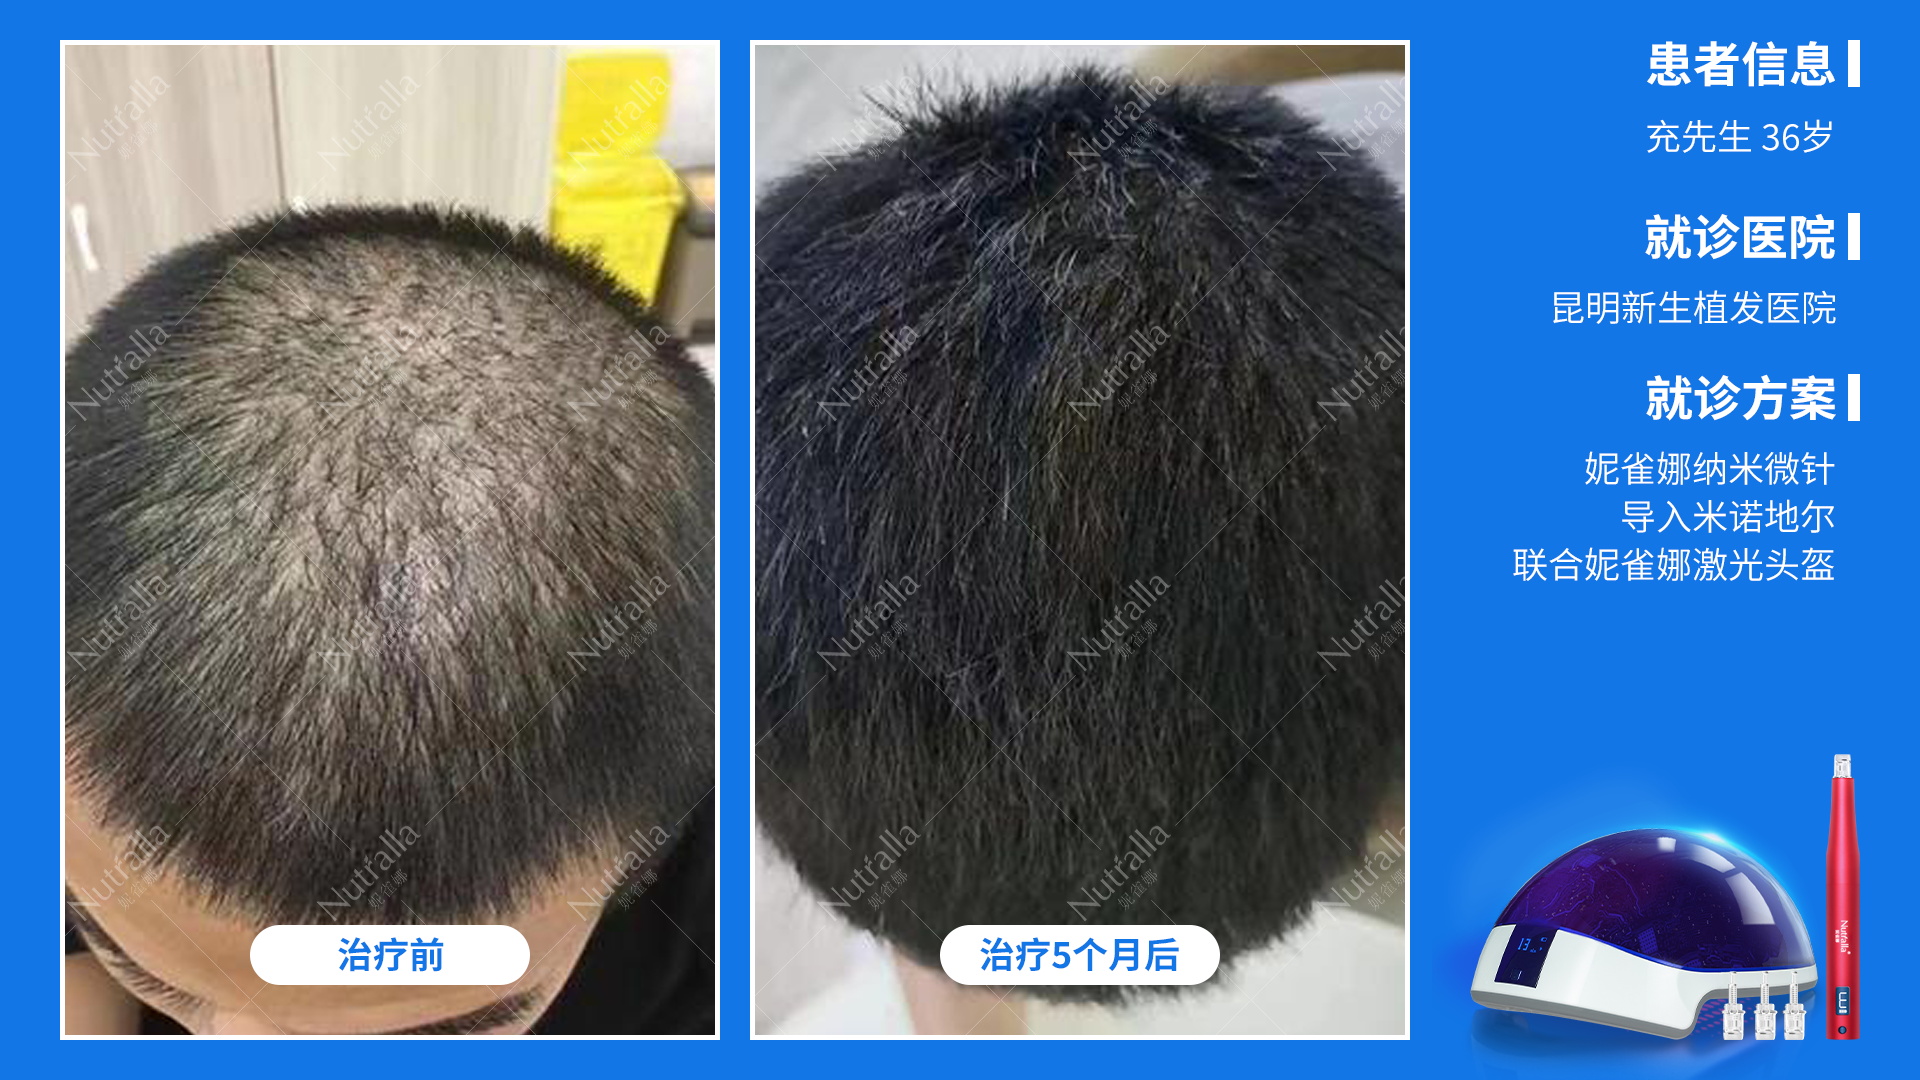 昆明新生植发医院药纳米微针治疗＋药物+激光生发帽5个月的男性患者效果